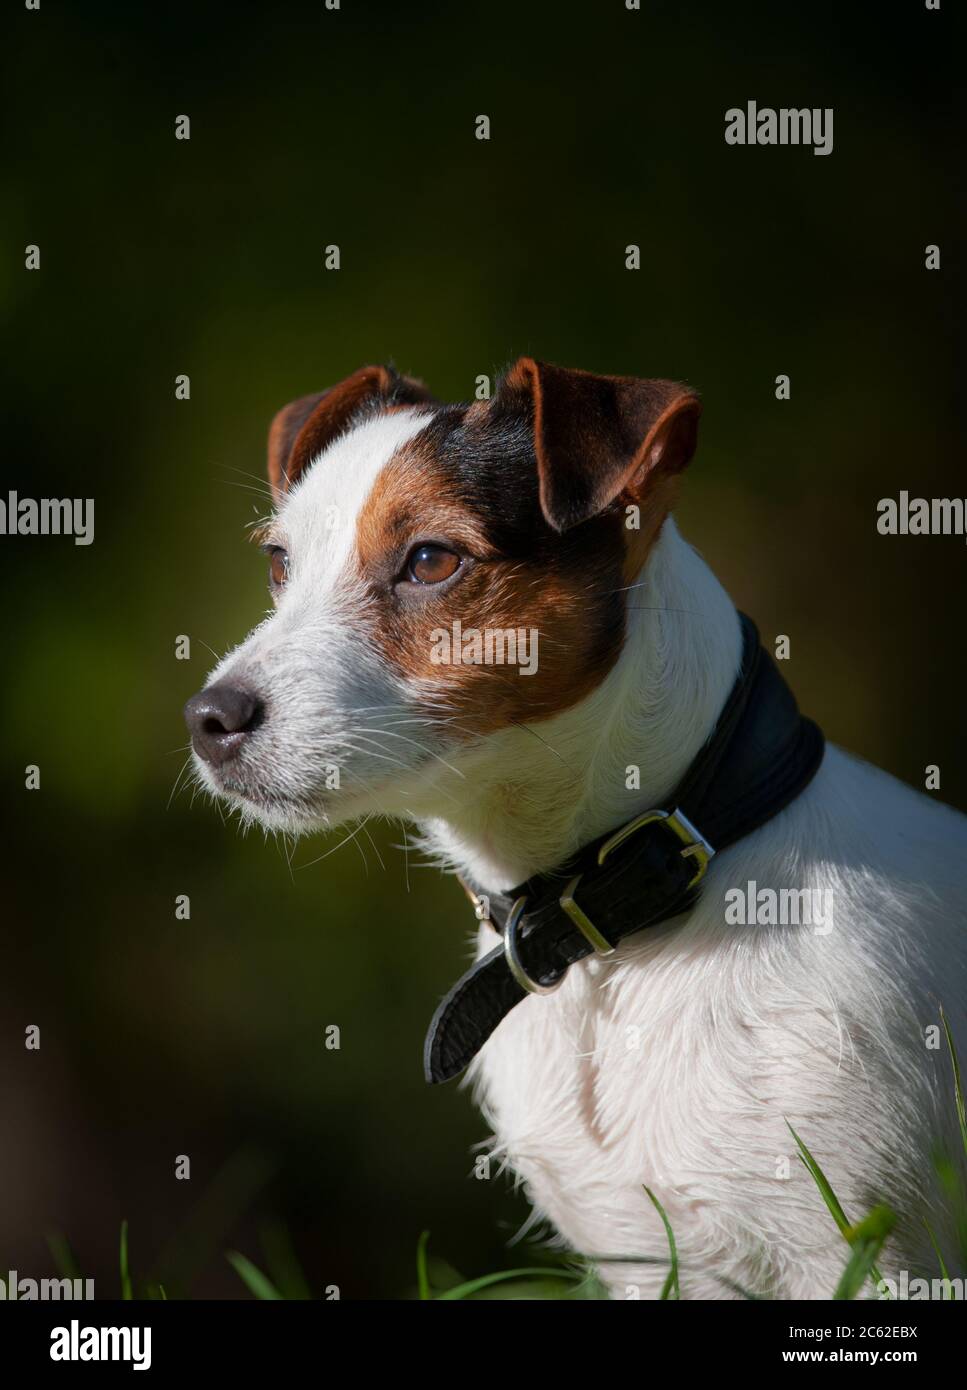 Jack russel terrier autumn portrait Stock Photo